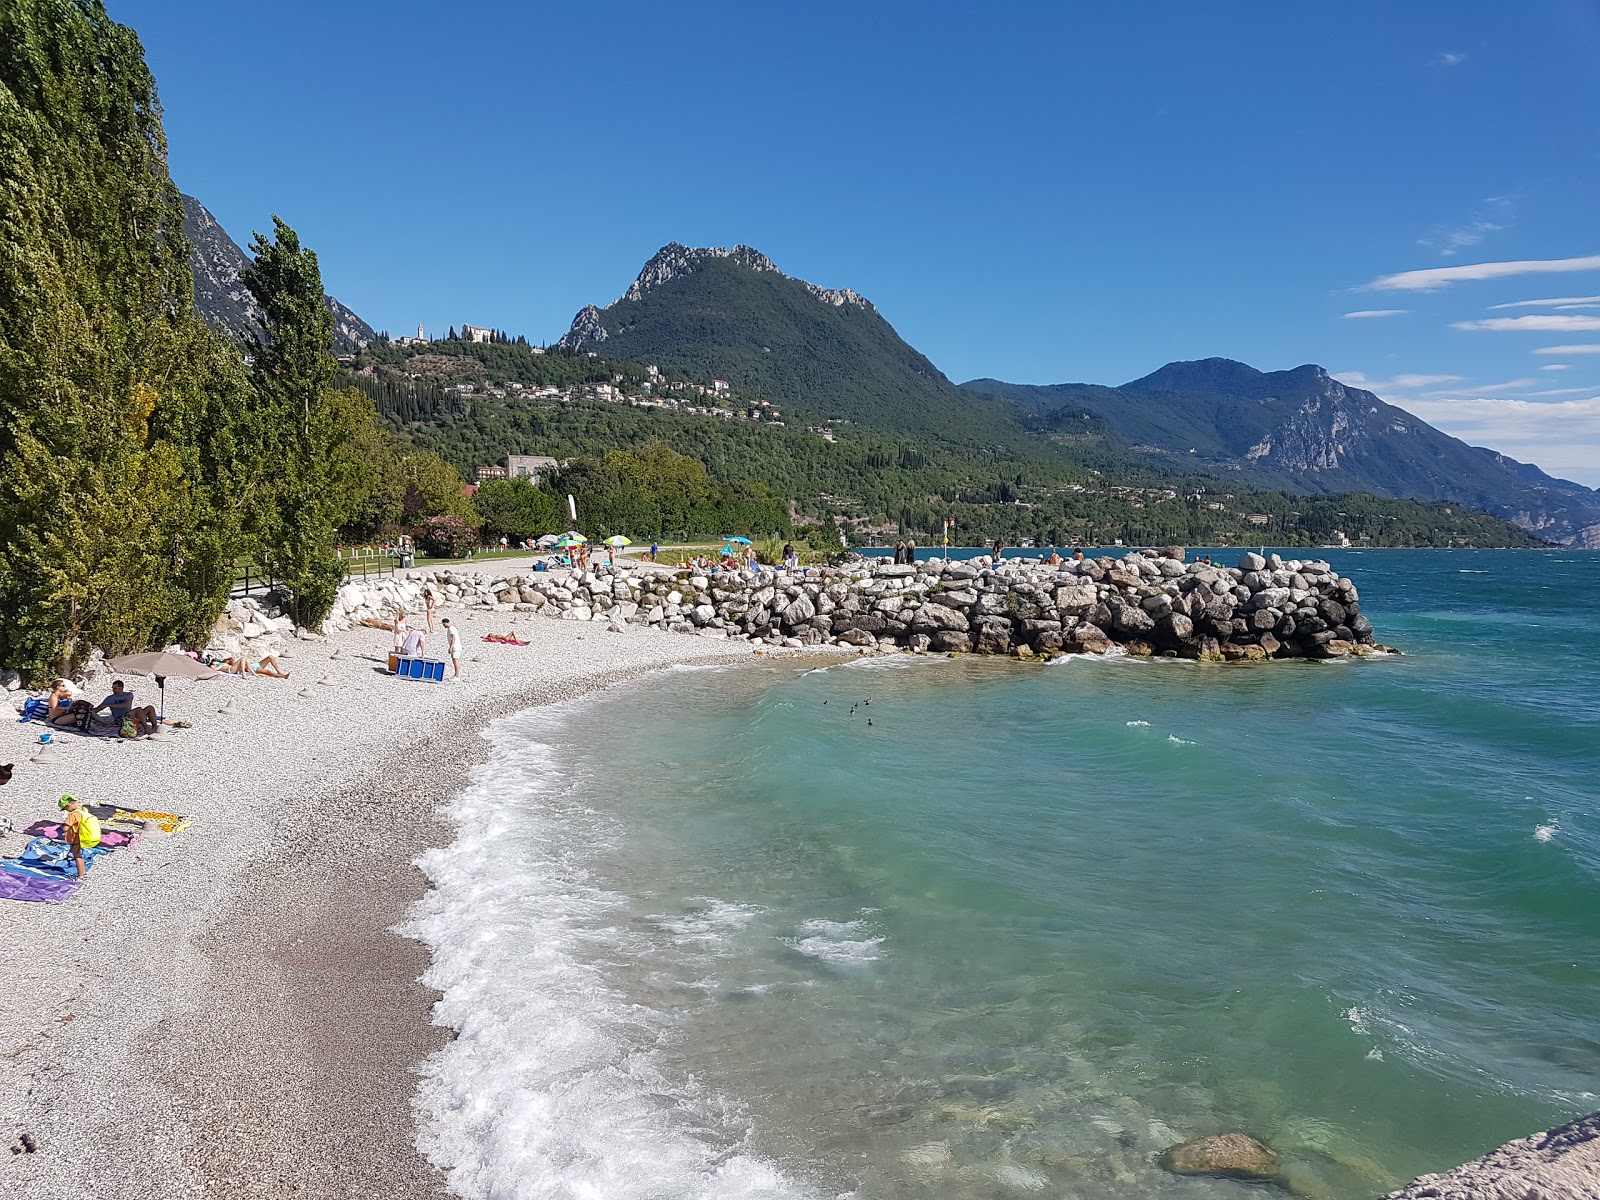 Spiaggia Toscolano'in fotoğrafı gri ince çakıl taş yüzey ile